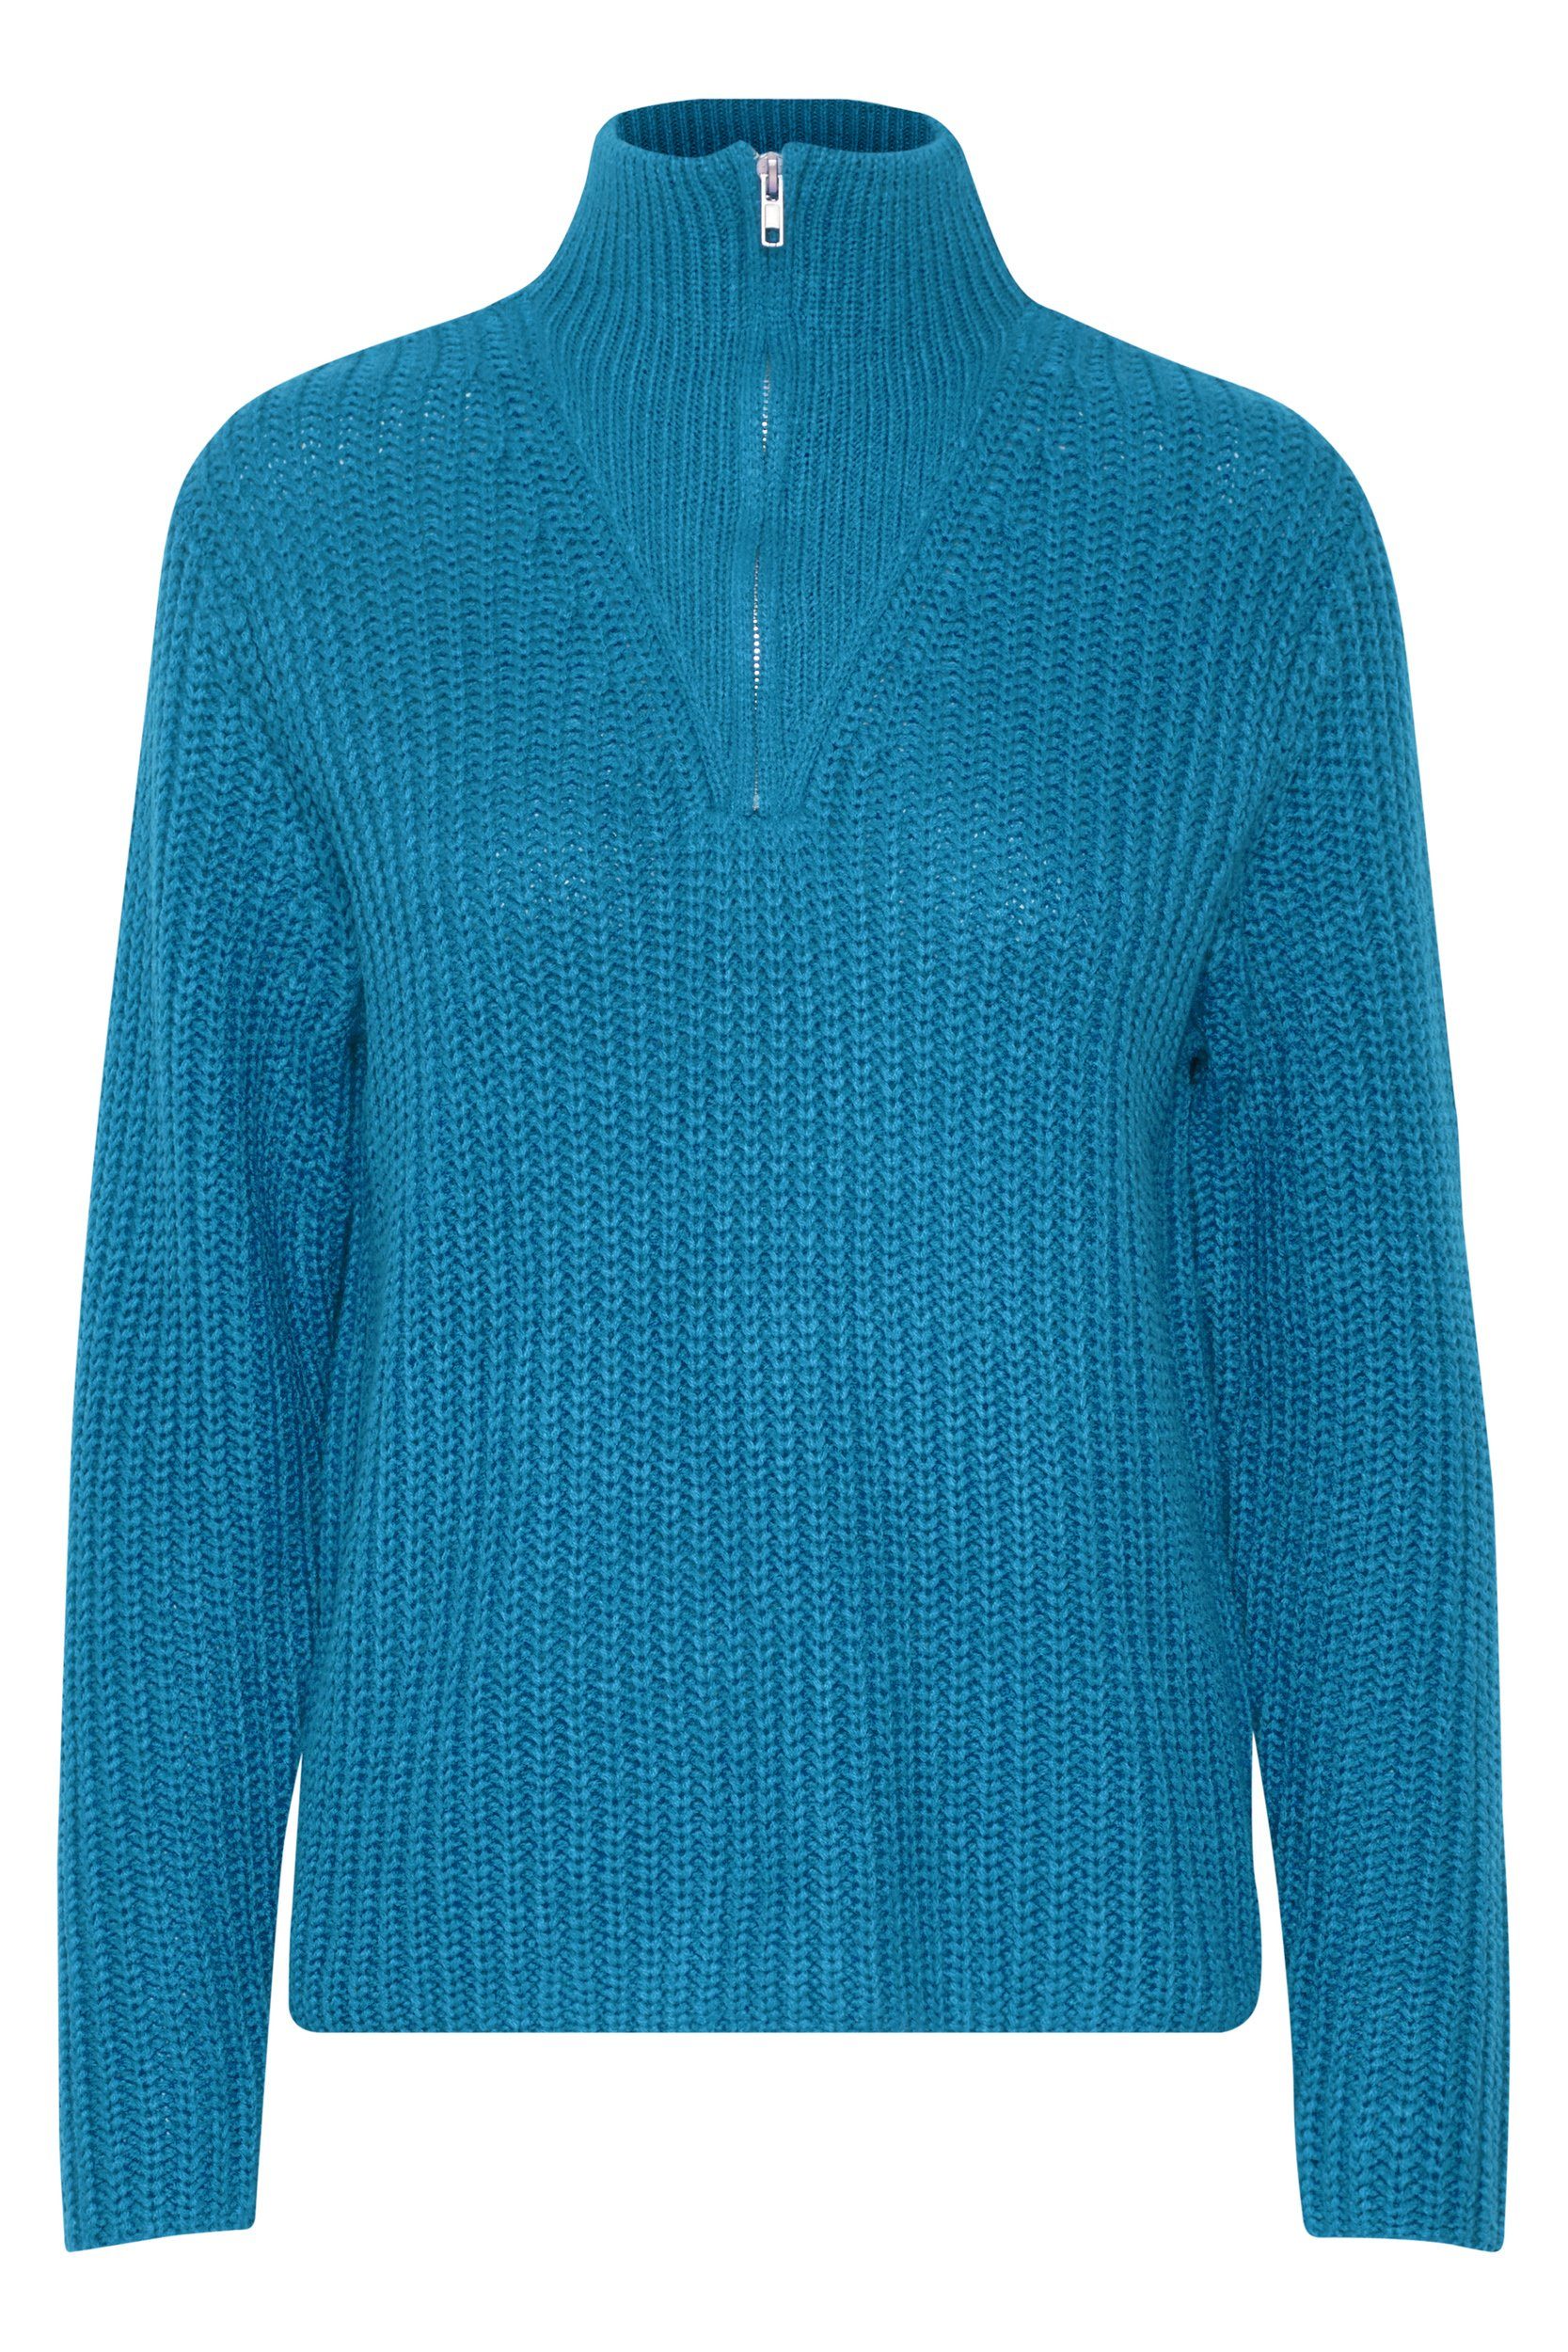 b.young Strickpullover Grobstrick Pullover Troyer Sweater mit Reißverschluss Kragen 6677 in Blau